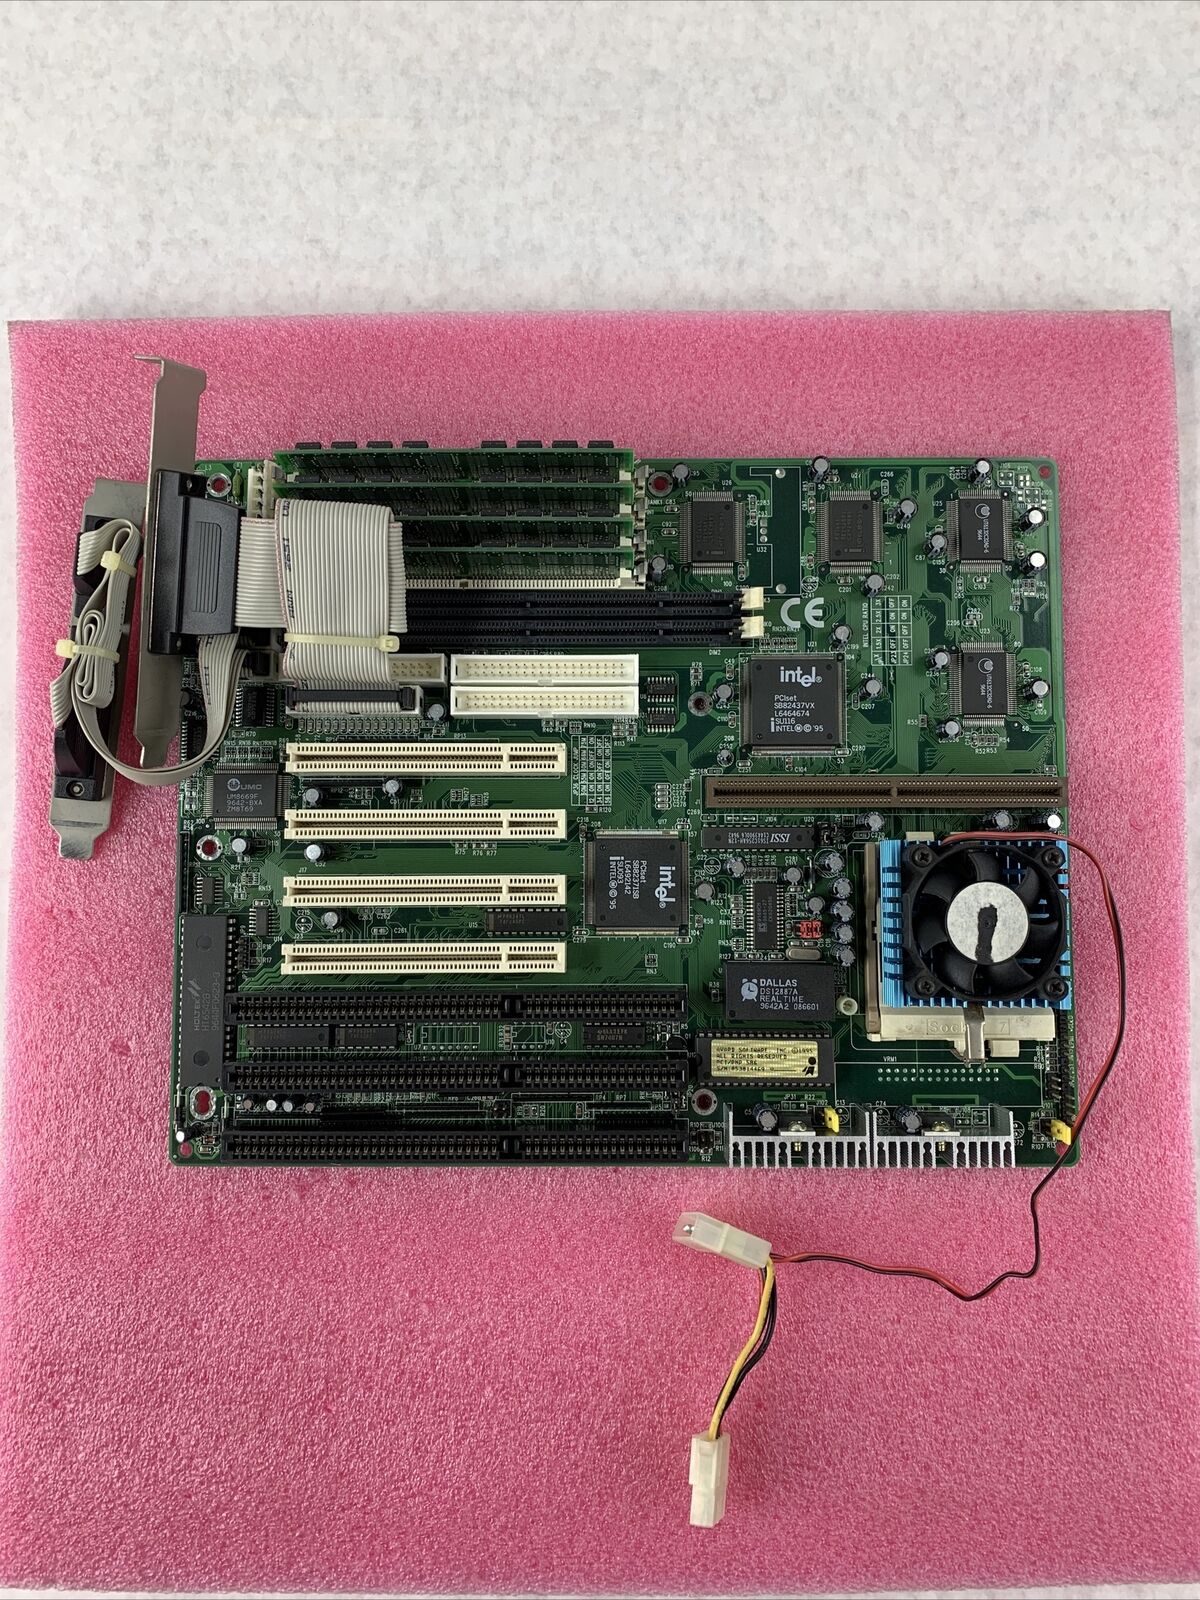 Shuttle 557 v1.32 Socket 7 Motherboard Intel Pentium 166MHz 64MB RAM